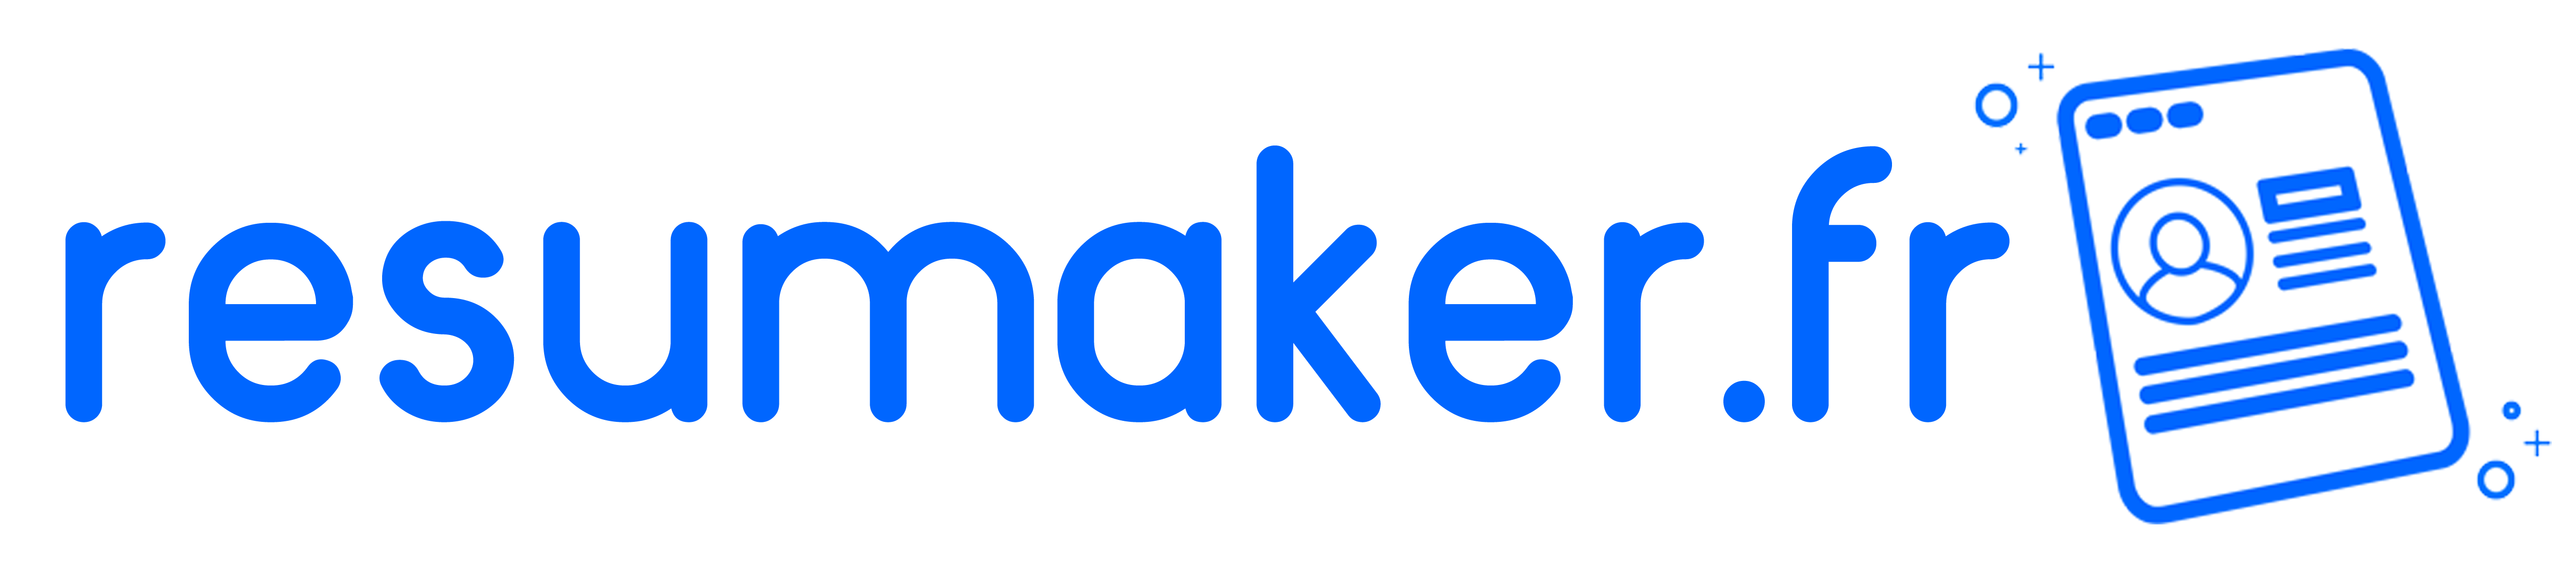 resumaker-logo